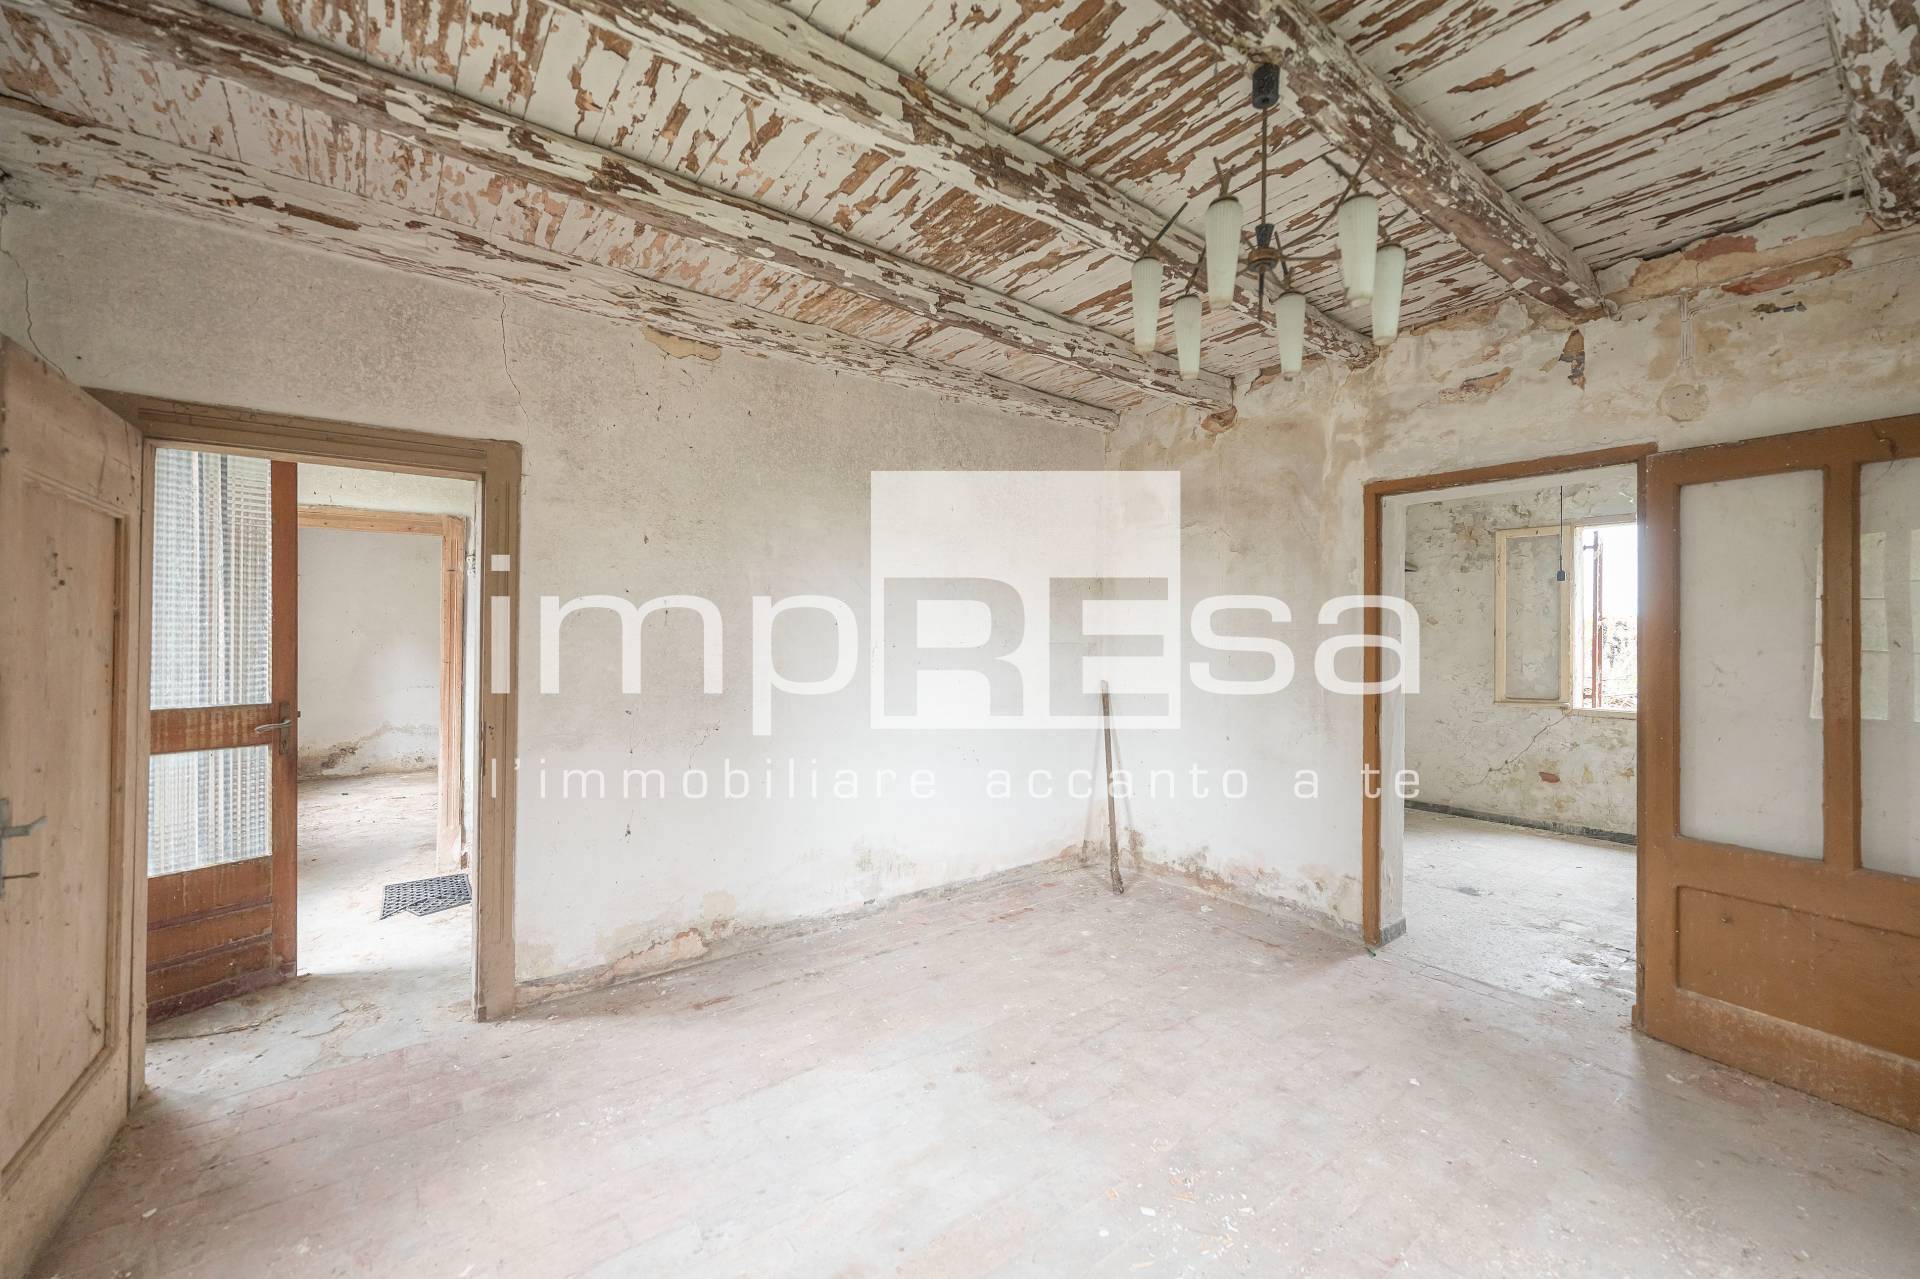 Rustico / Casale in vendita a Pasiano di Pordenone, 3 locali, zona Località: S.Andrea, prezzo € 60.000 | PortaleAgenzieImmobiliari.it